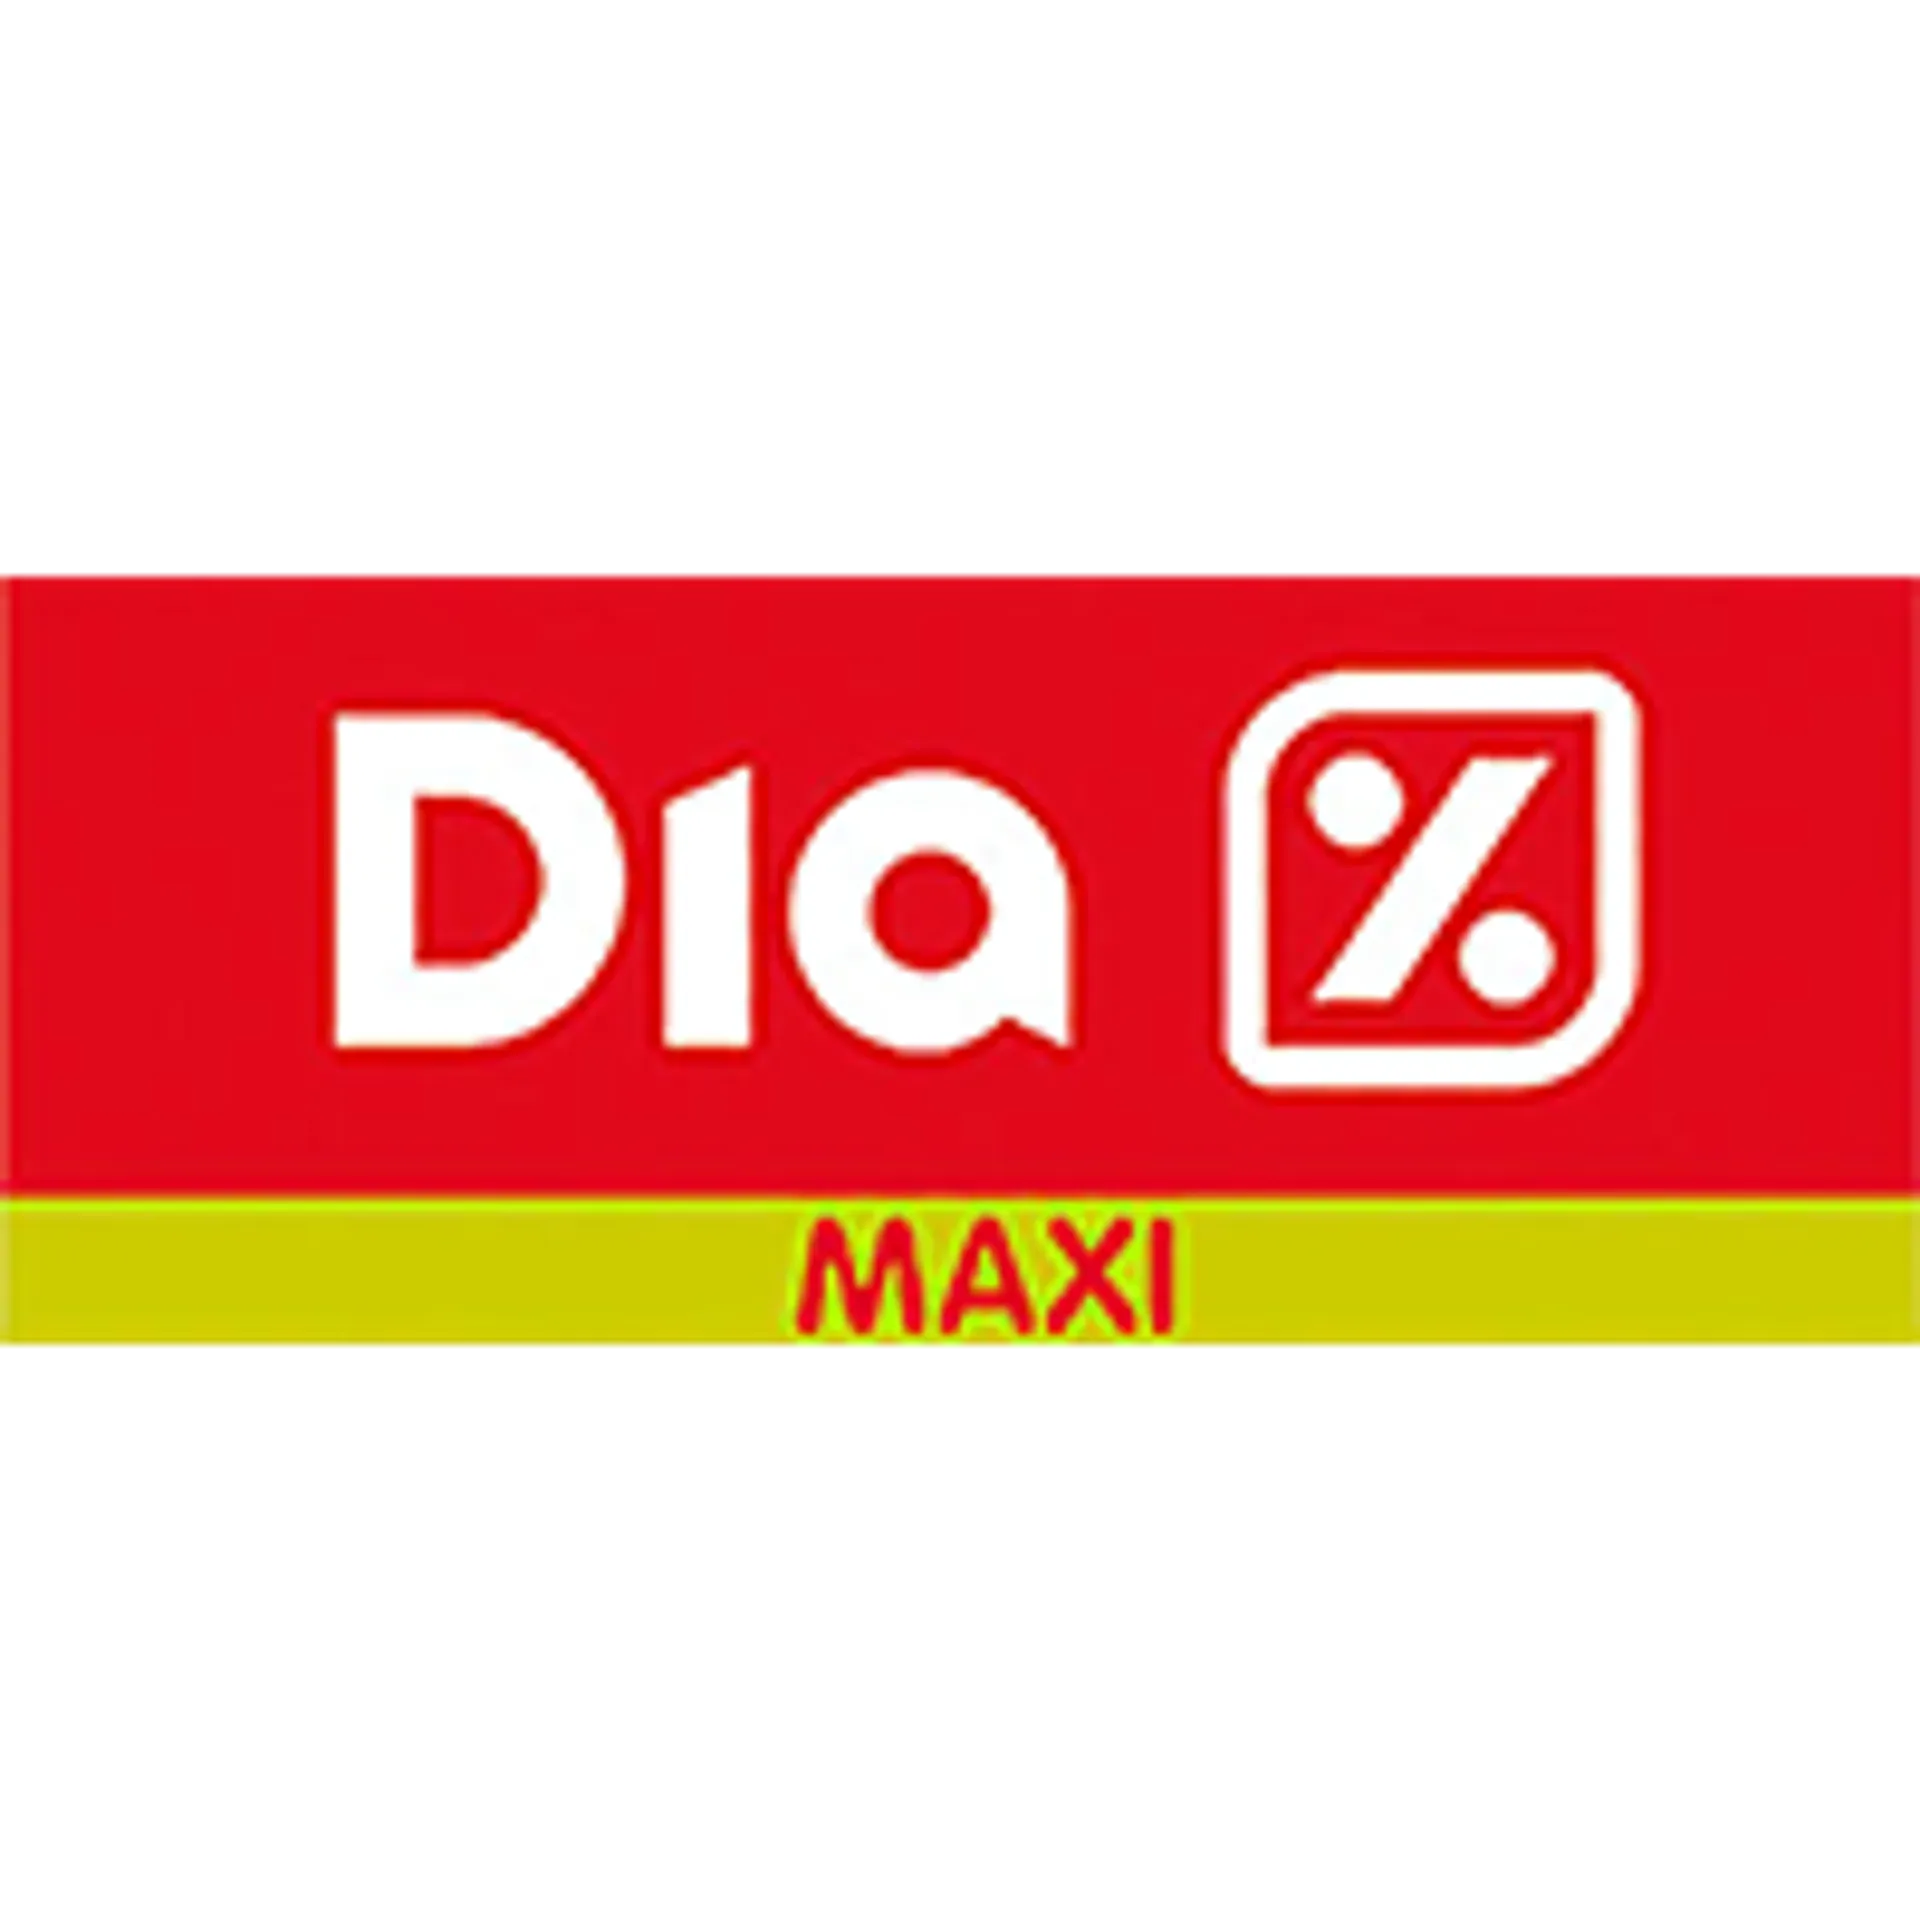 MAXI DIA logo